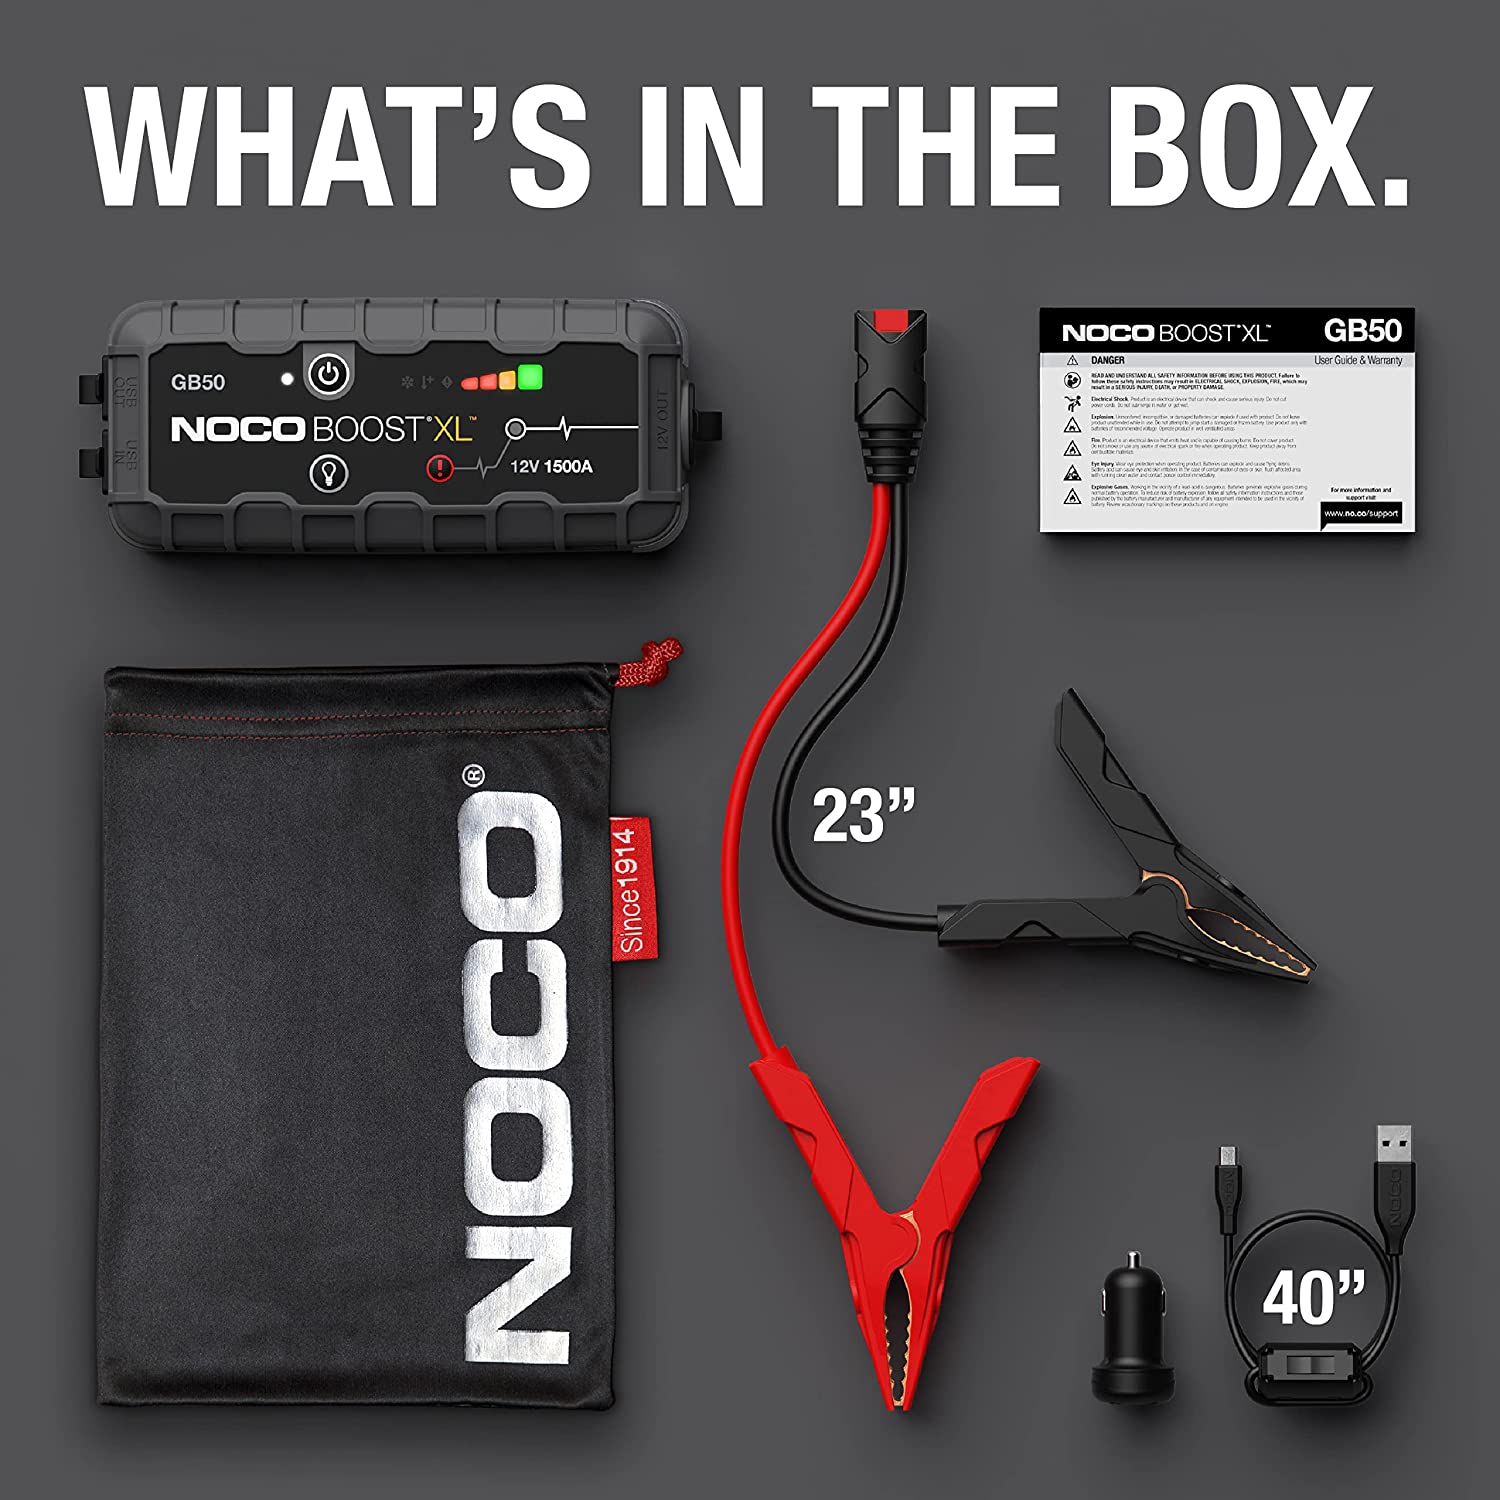 NOCO Boost XL GB50 1500 Amp 12-Volt UltraSafe Lithium Jump Starter